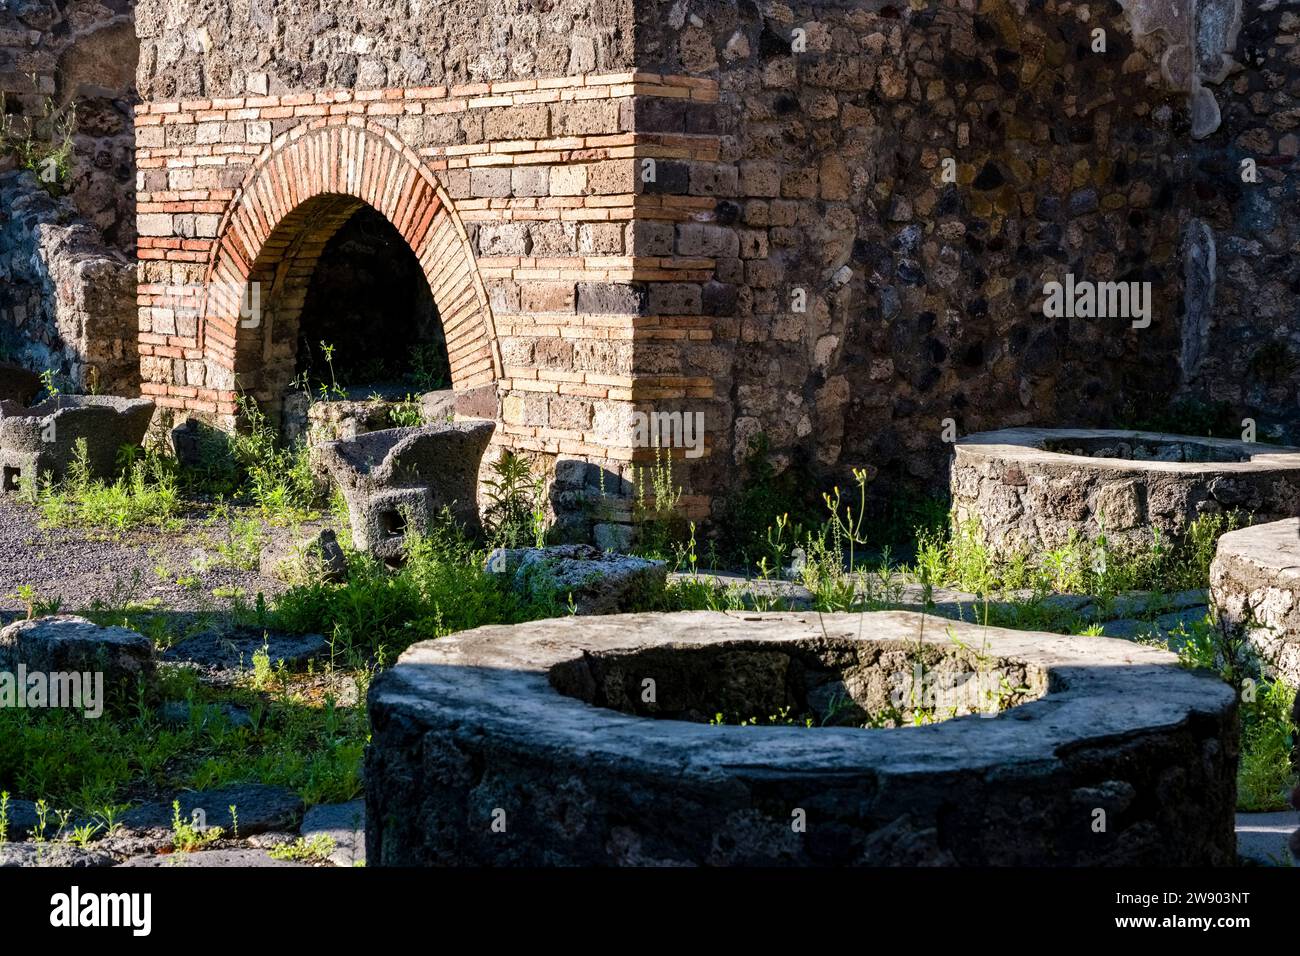 Ruinen des Pistrinums in der archäologischen Stätte von Pompeji, einer antiken Stadt, die durch den Ausbruch des Vesuvs im Jahr 79 n. Chr. zerstört wurde. Stockfoto